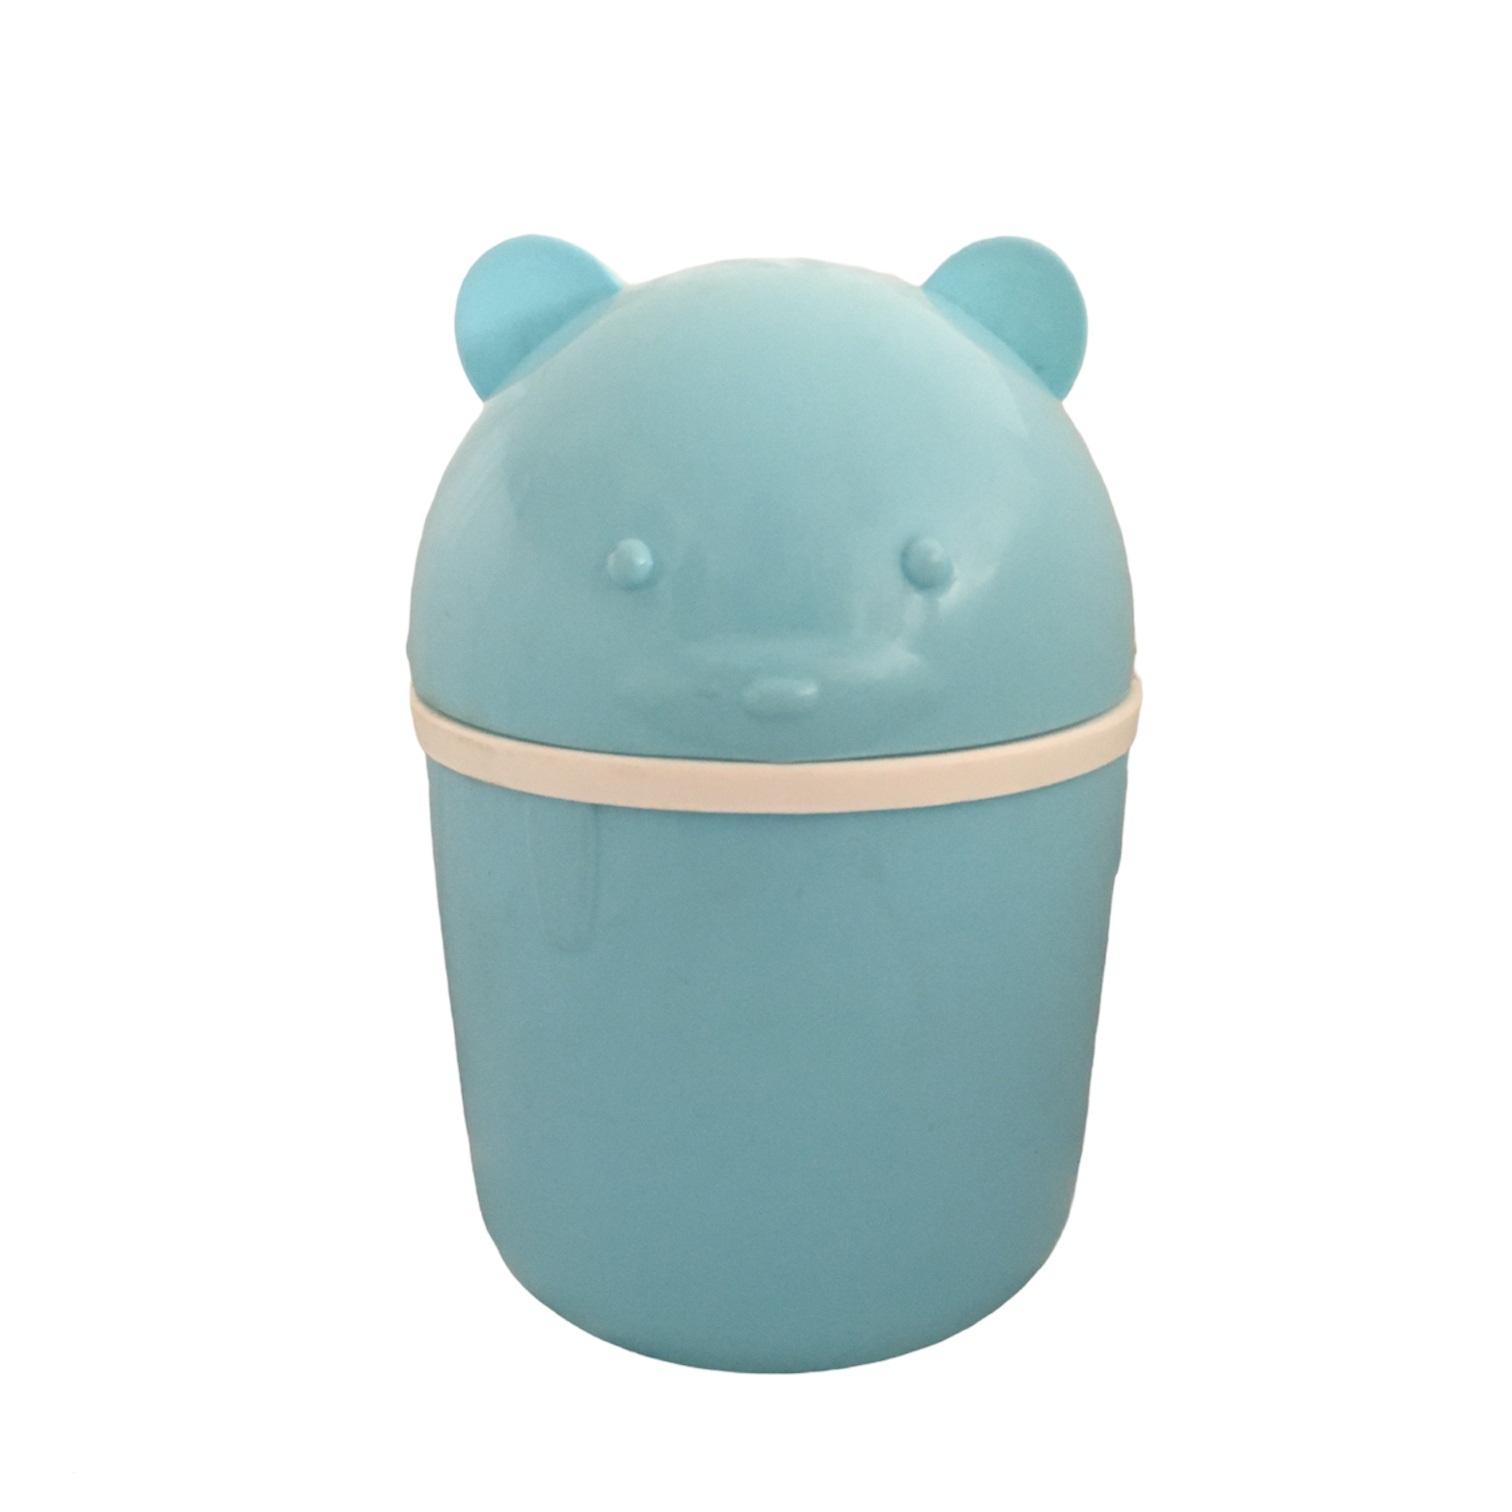 سطل زباله مدل خرس کد 3